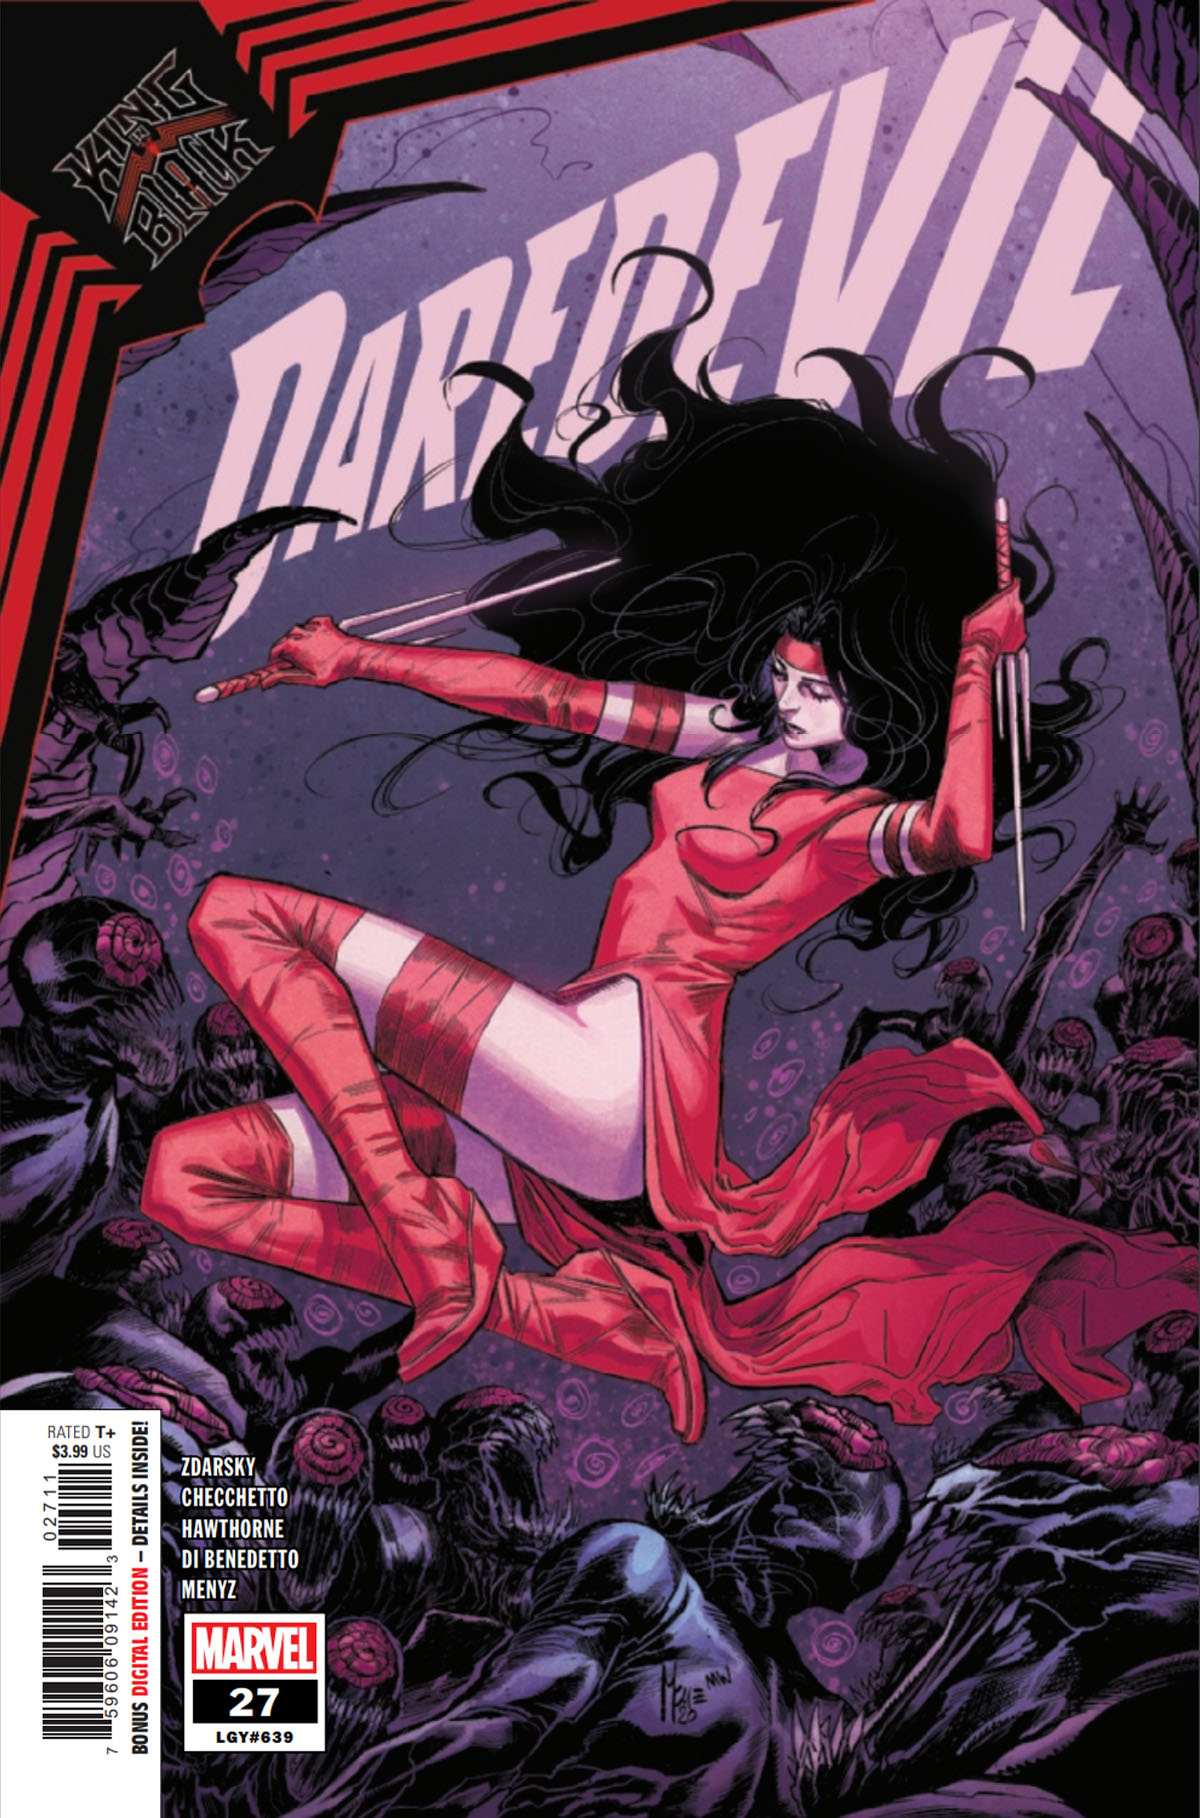 Daredevil #27 cover